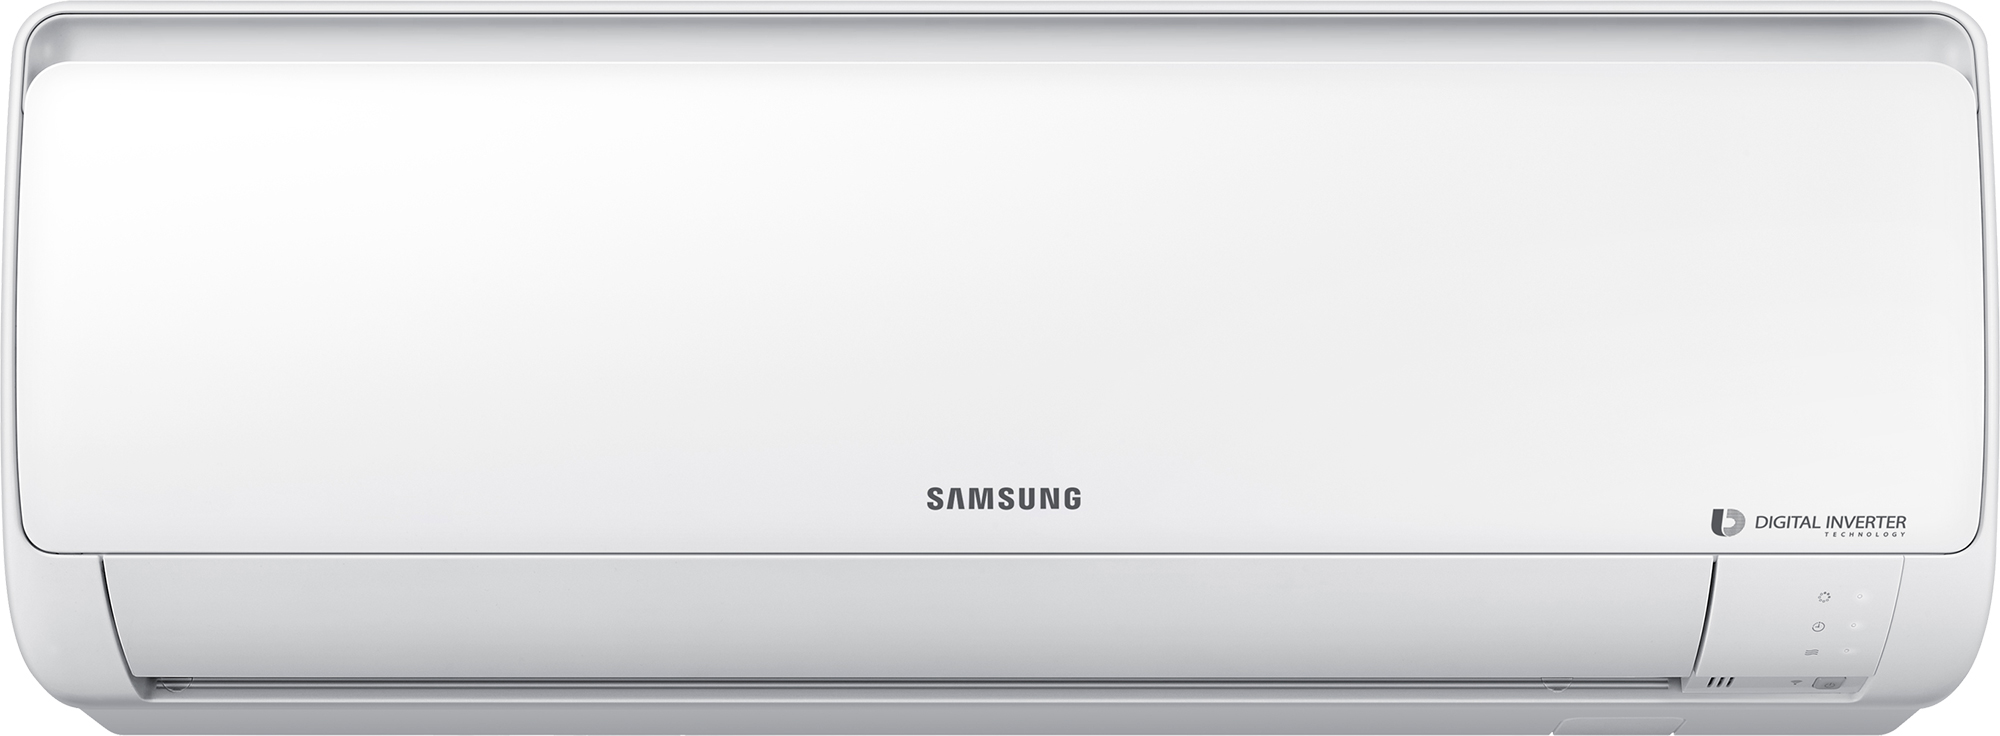 Кондиционер Samsung с обогревом Samsung AR24RSFPAWQNER / AR24RSFPAWQXER